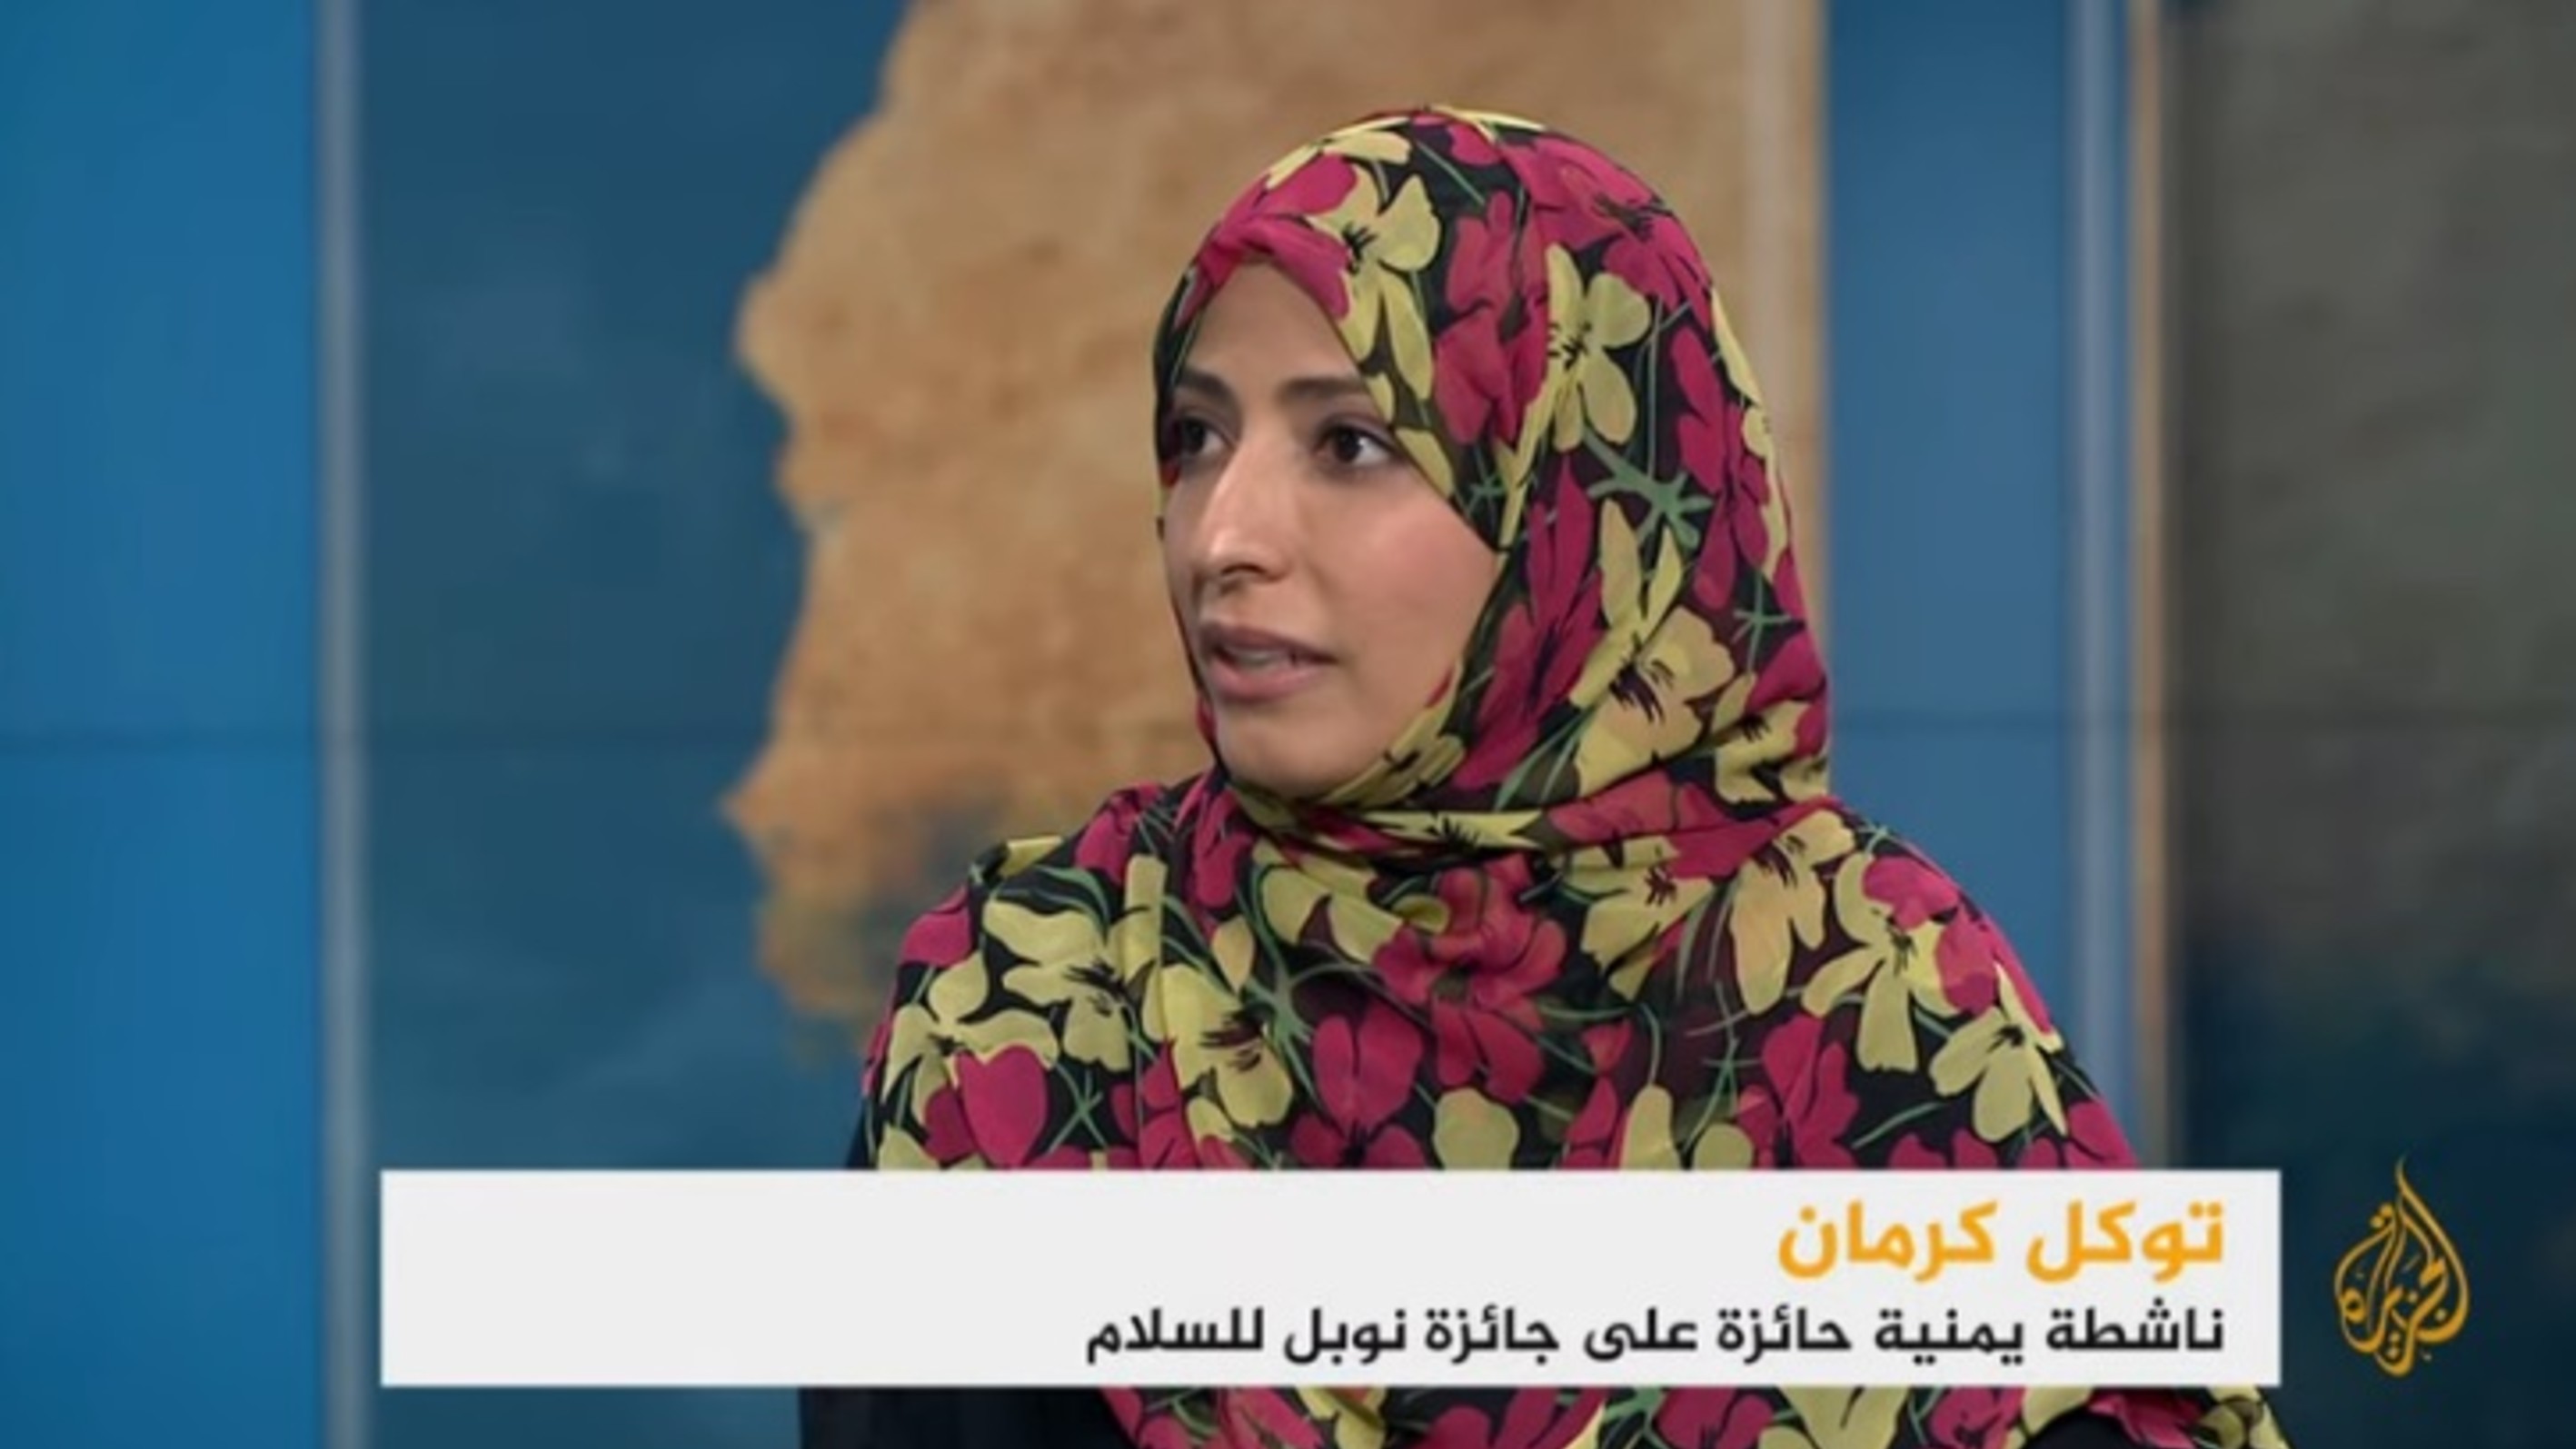 حوار الناشطة الحائزة على جائزة نوبل للسلام توكل كرمان مع قناة الجزيرة الفضائية